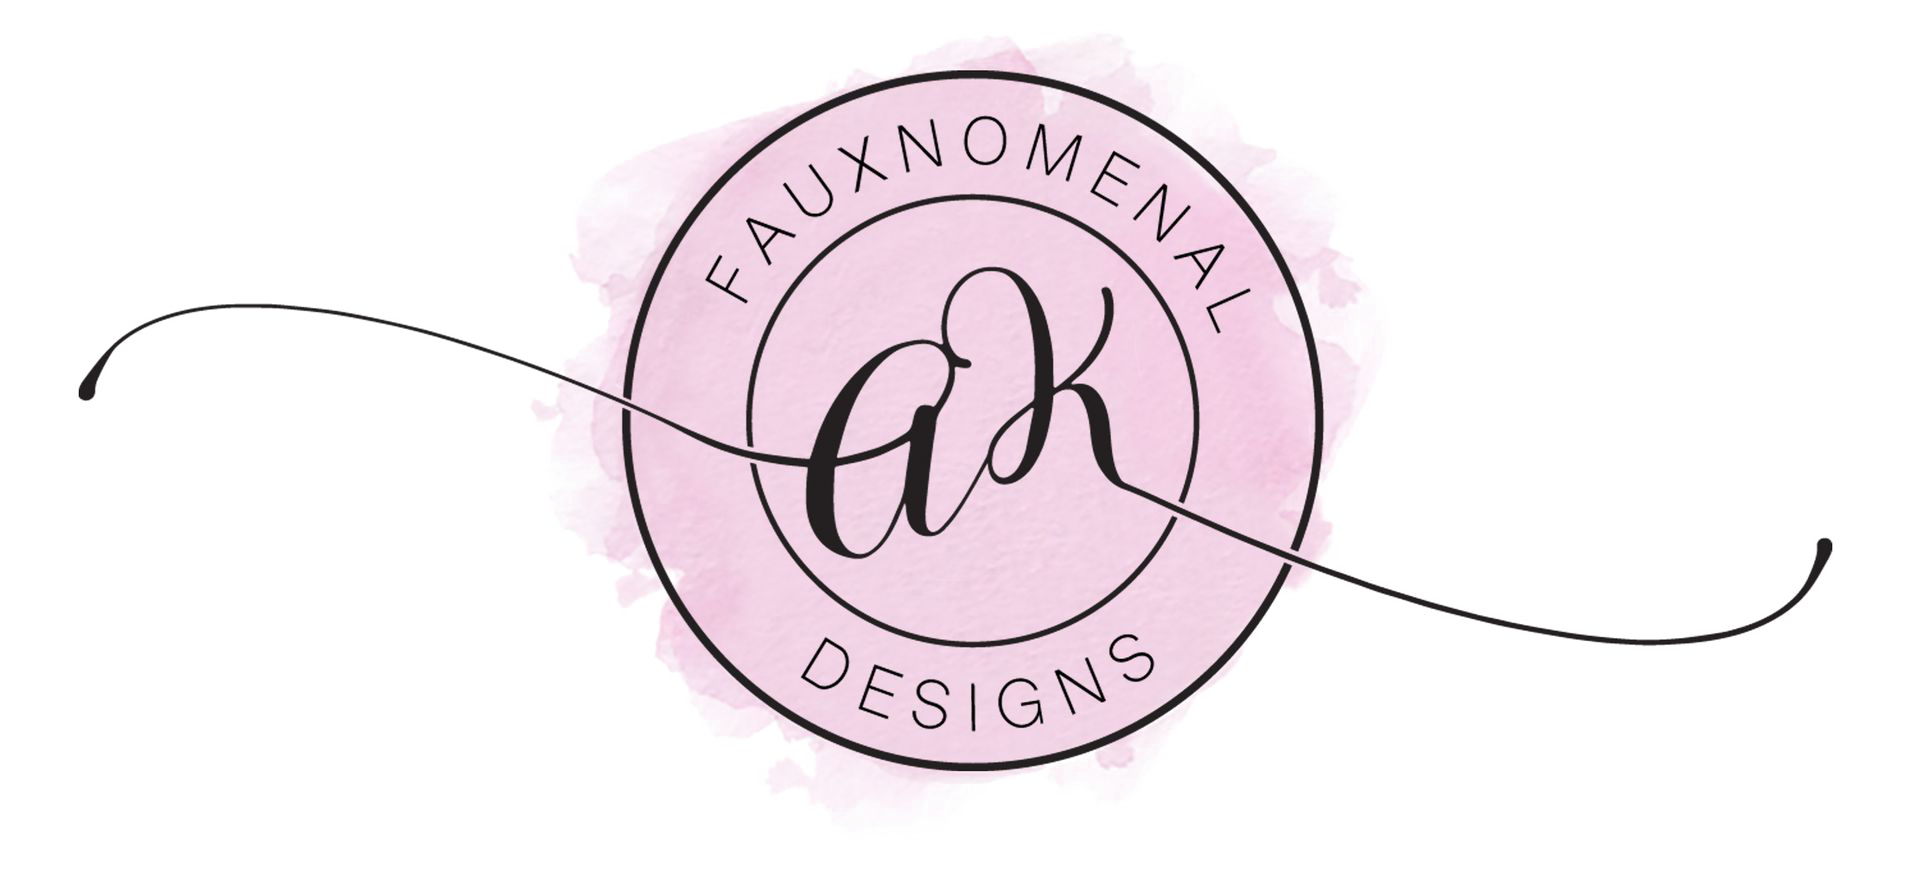 Fauxnomenal Designs - Logo